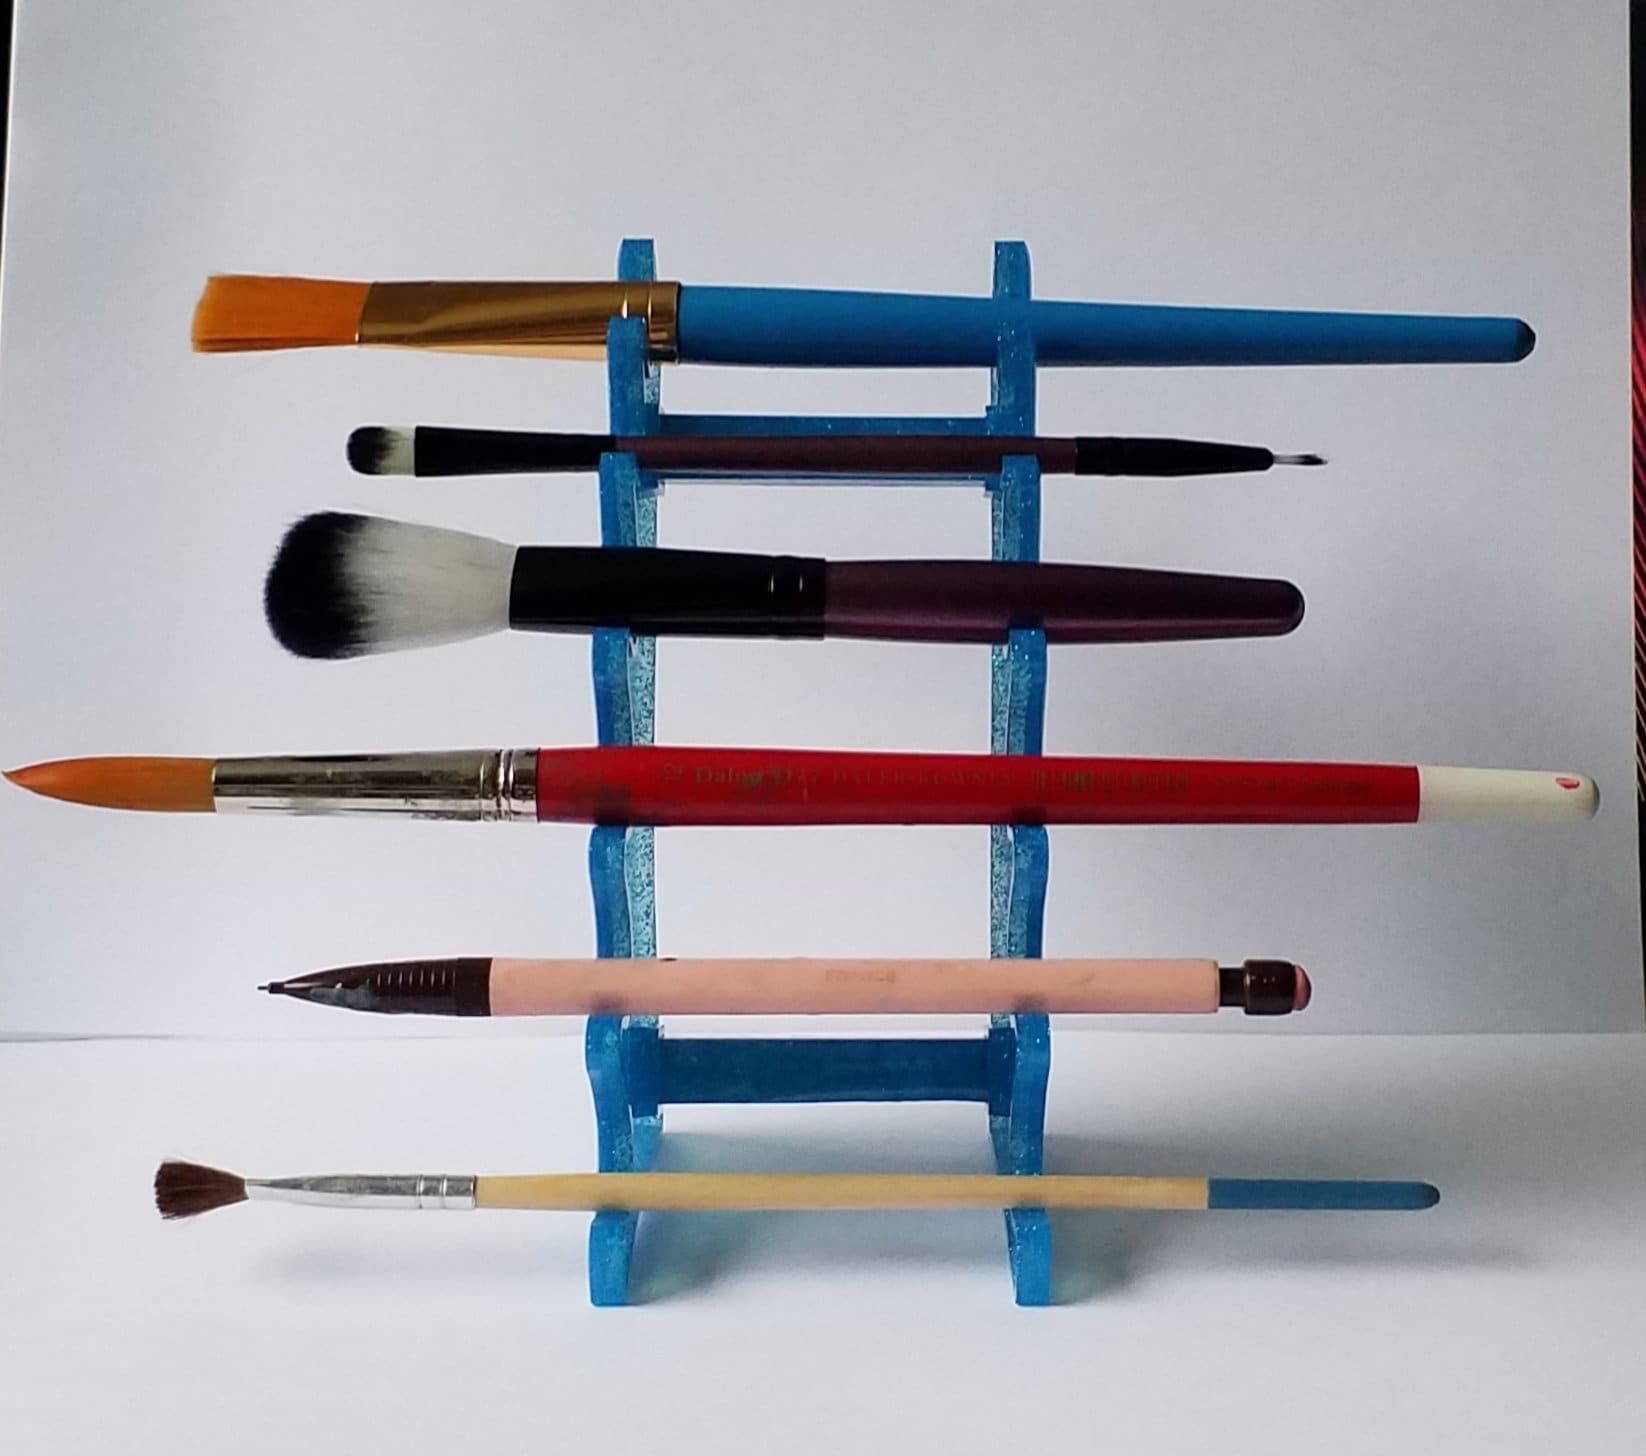 Paintbrush Holder, Ceramic Paintbrush Holder, Paint Brush Rest, Paint Brush  Holder, White Brush Rest, Gift for Artists 